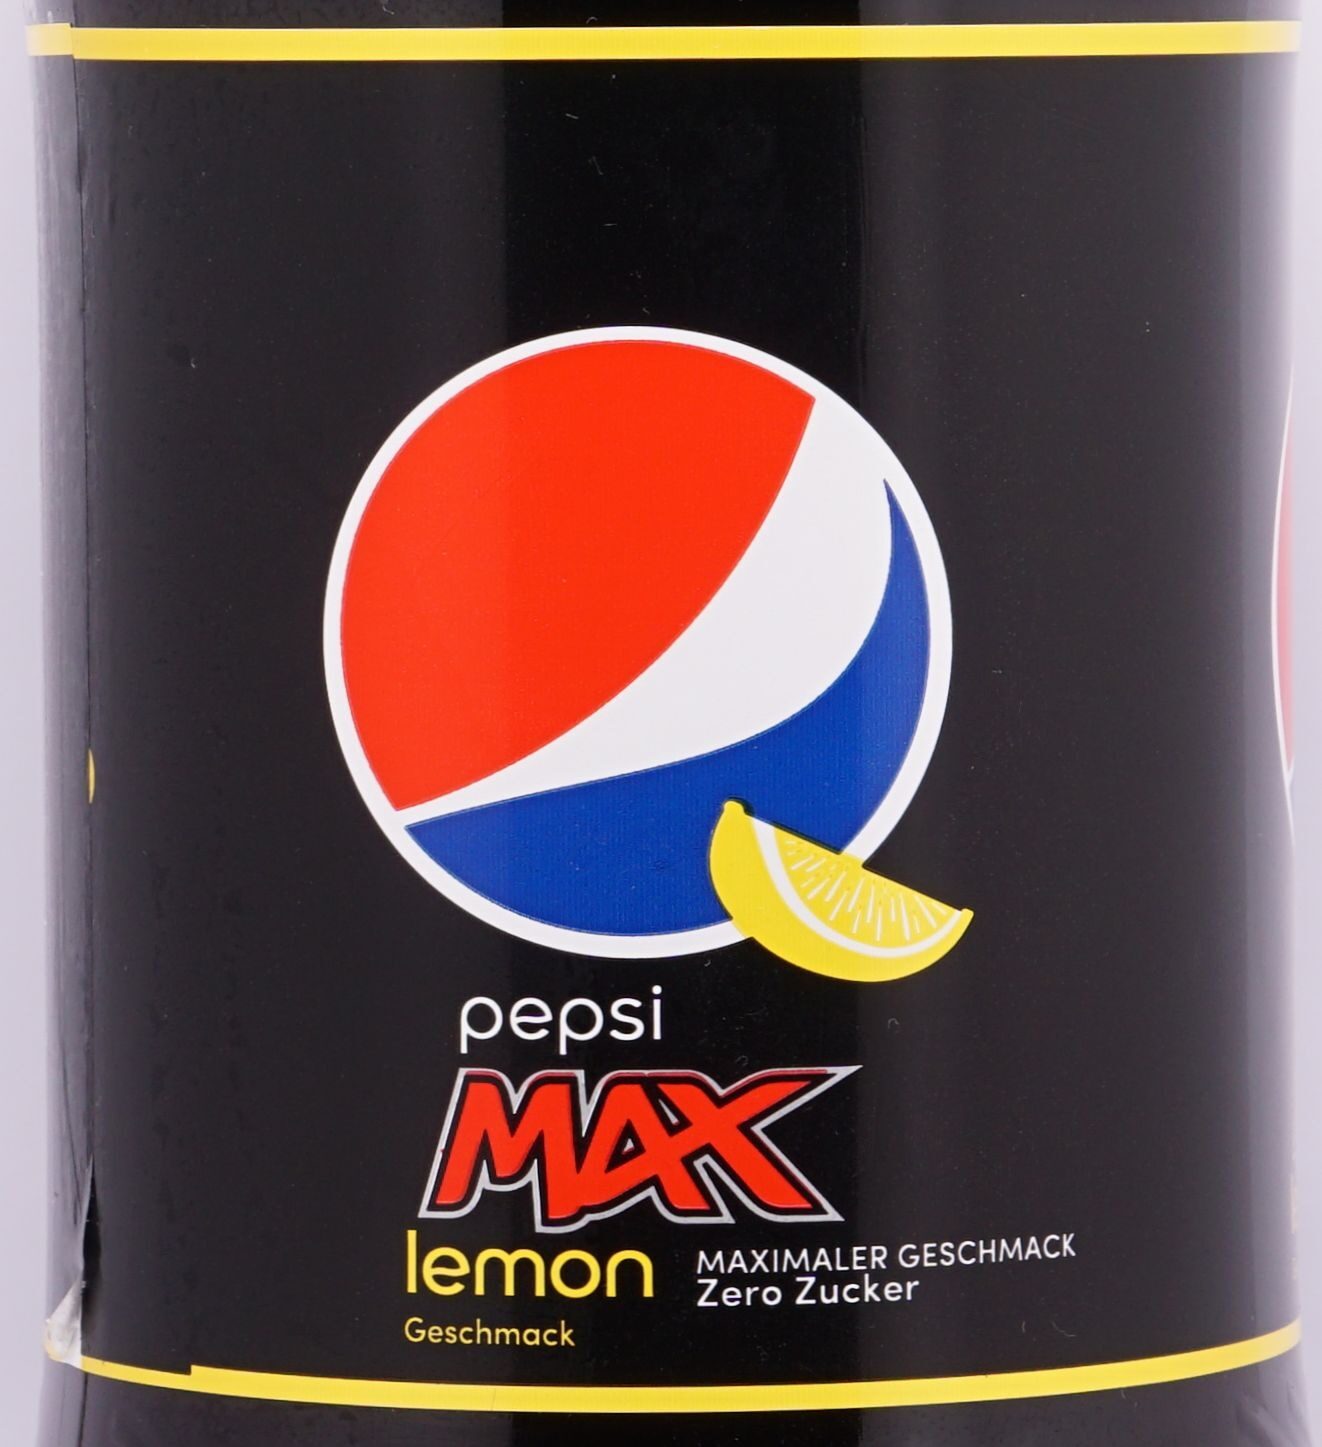 Pepsi Max Lemon 1.5 l, Ean 4060800176721 , Diet cola soft drink